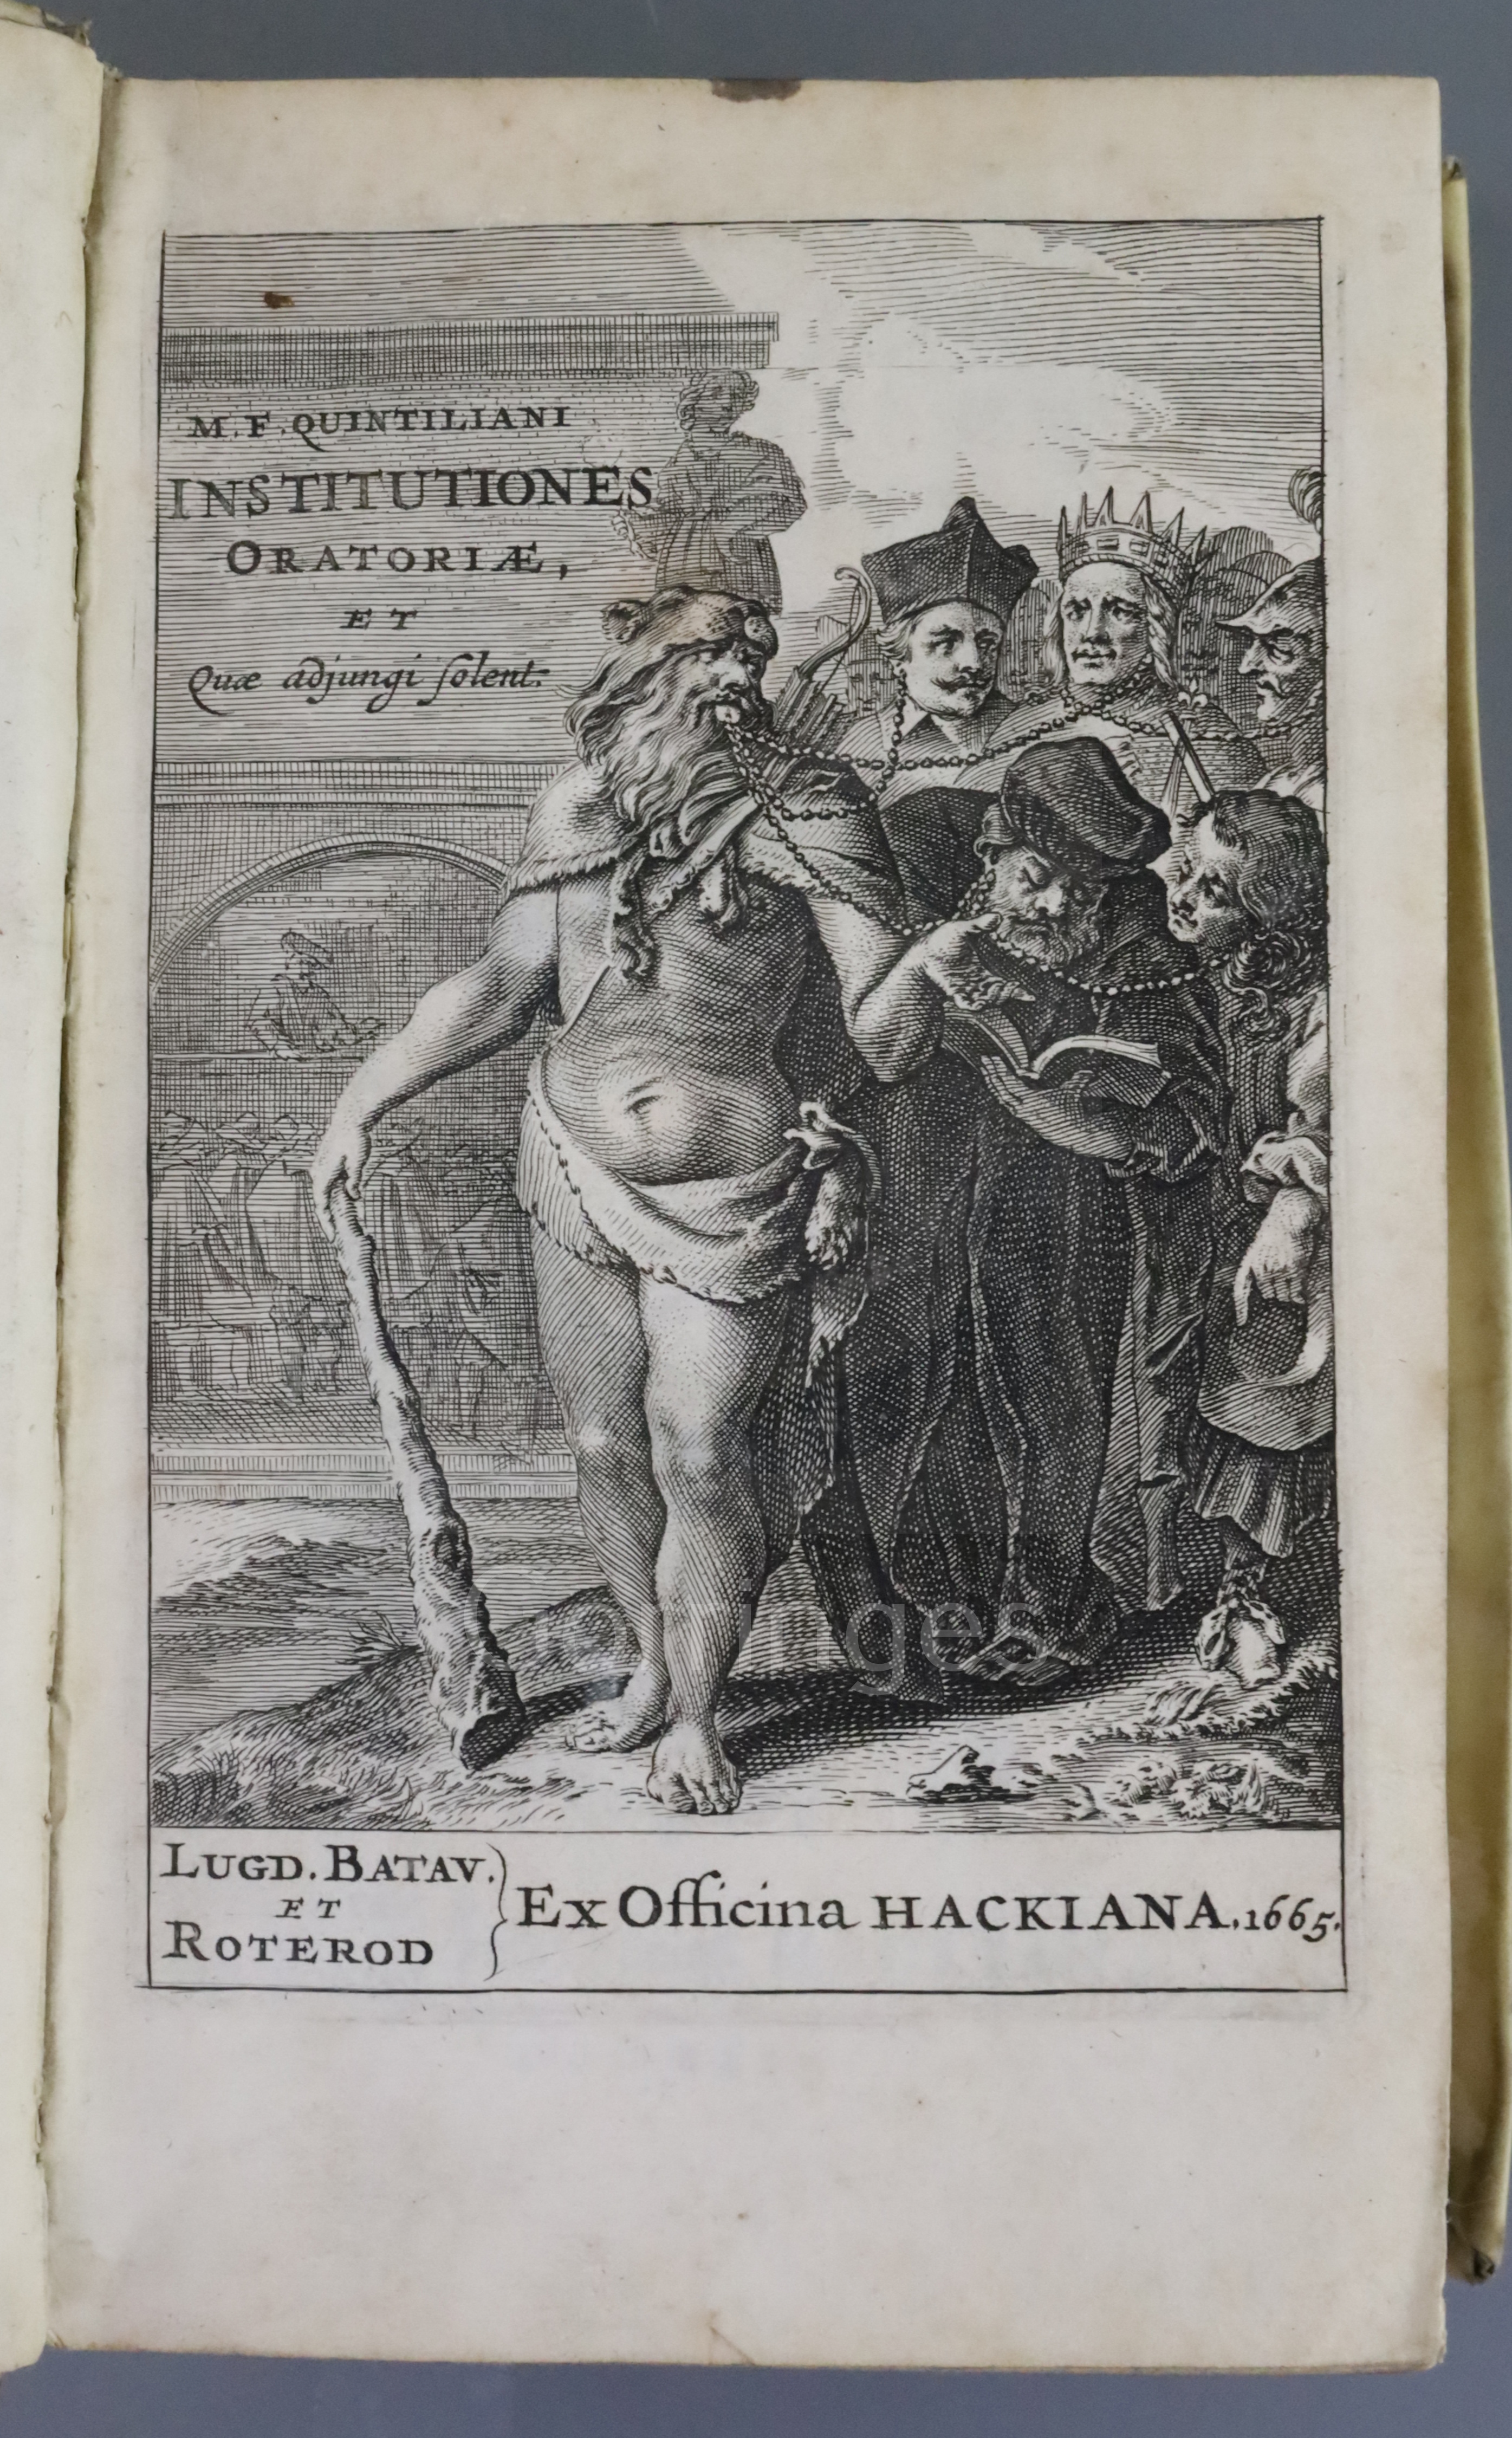 Quintilianus, Marcus Fabius - Institutiones oratoriae. "Institutionum oratoriarum libri XII, vol